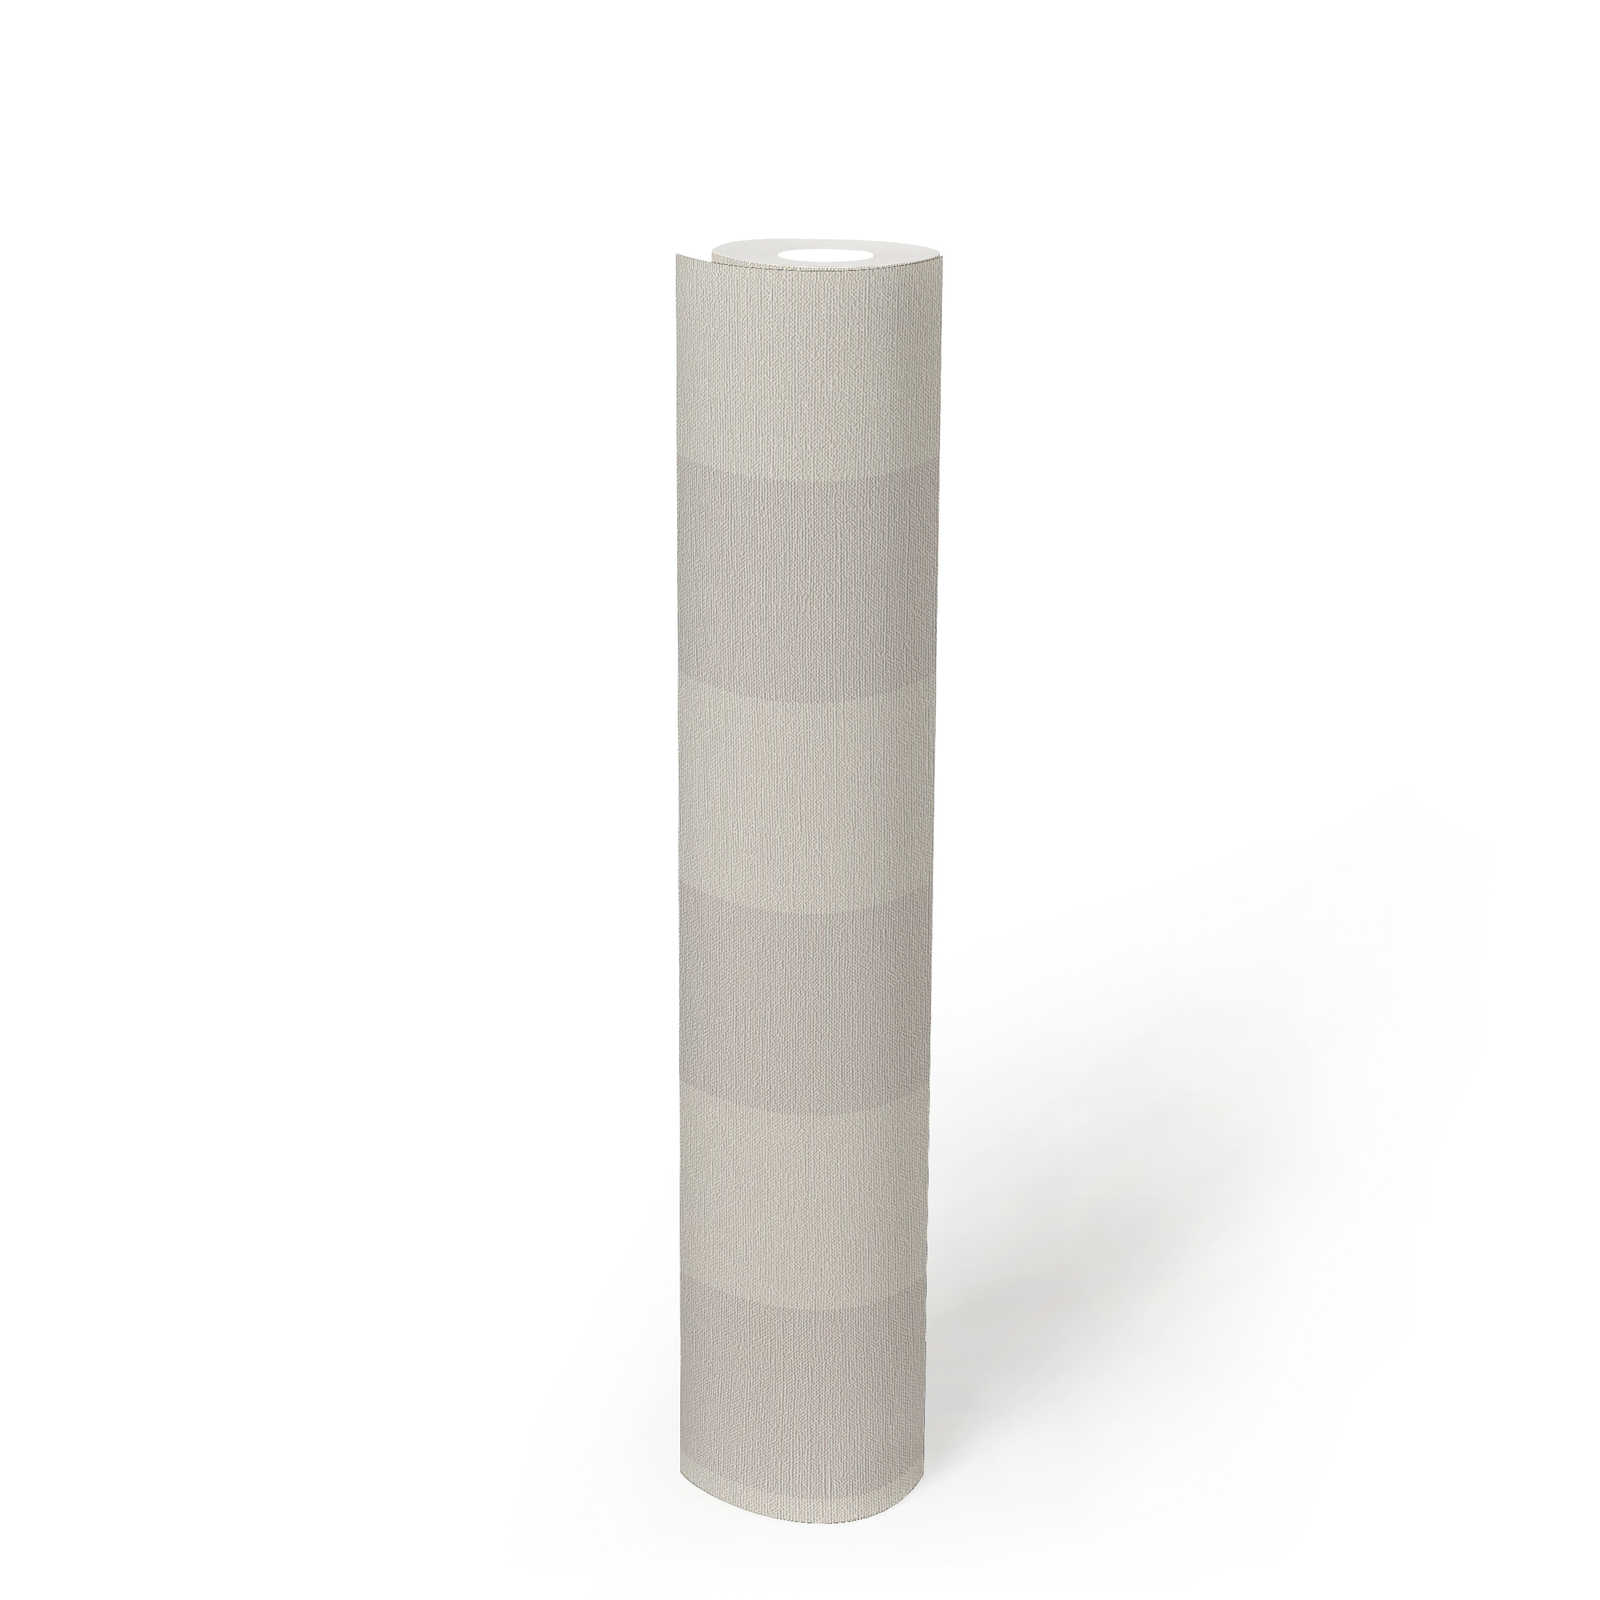             Gestreept vliesbehang met linnenlook PVC-vrij - grijs, wit
        